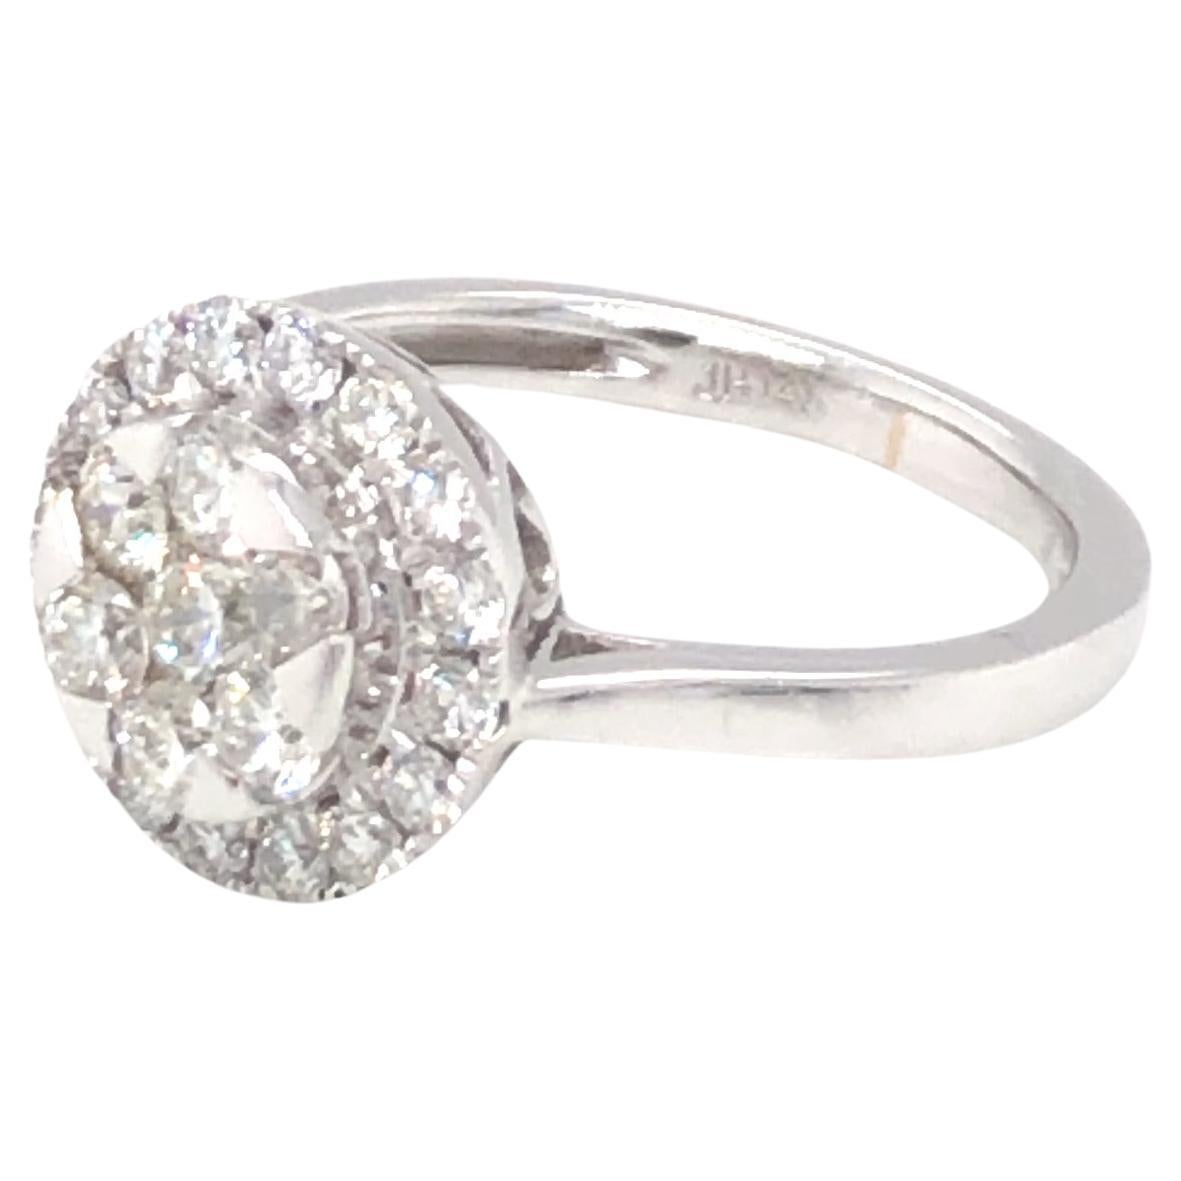 Cluster Diamond Ring 14K White Gold For Sale